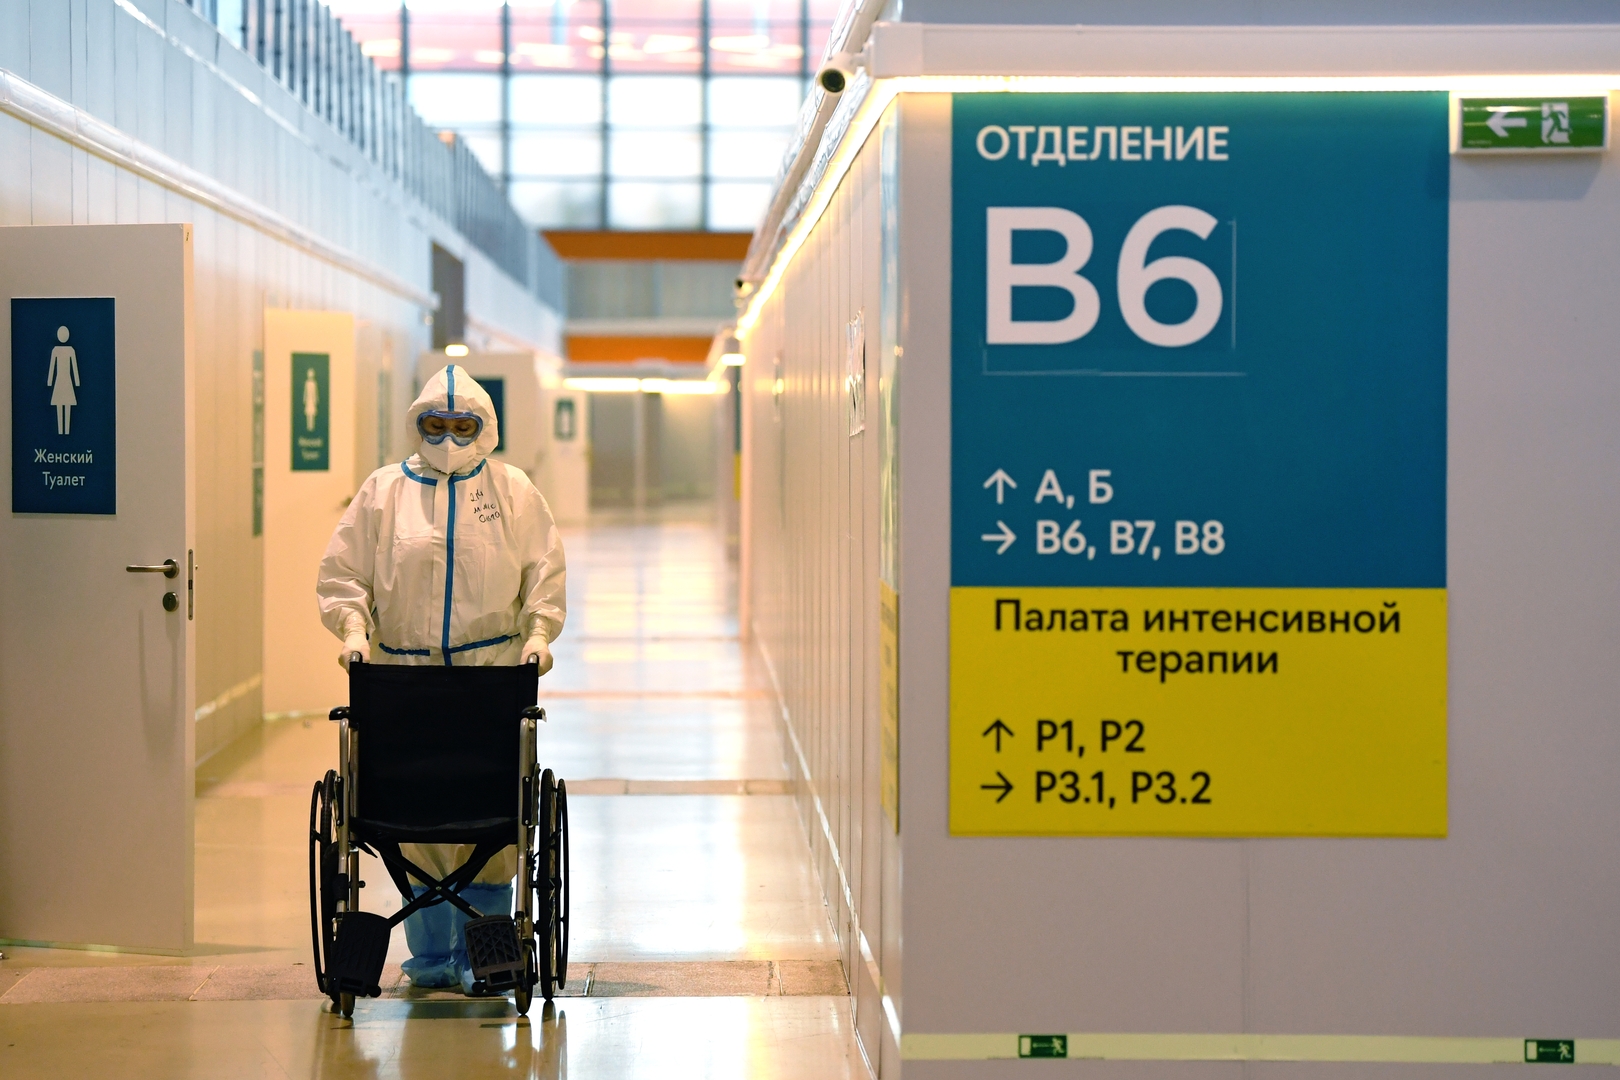 الإصابات اليومية بكورونا في روسيا تتجاوز الـ17 ألفا أكثر من نصفها في موسكو